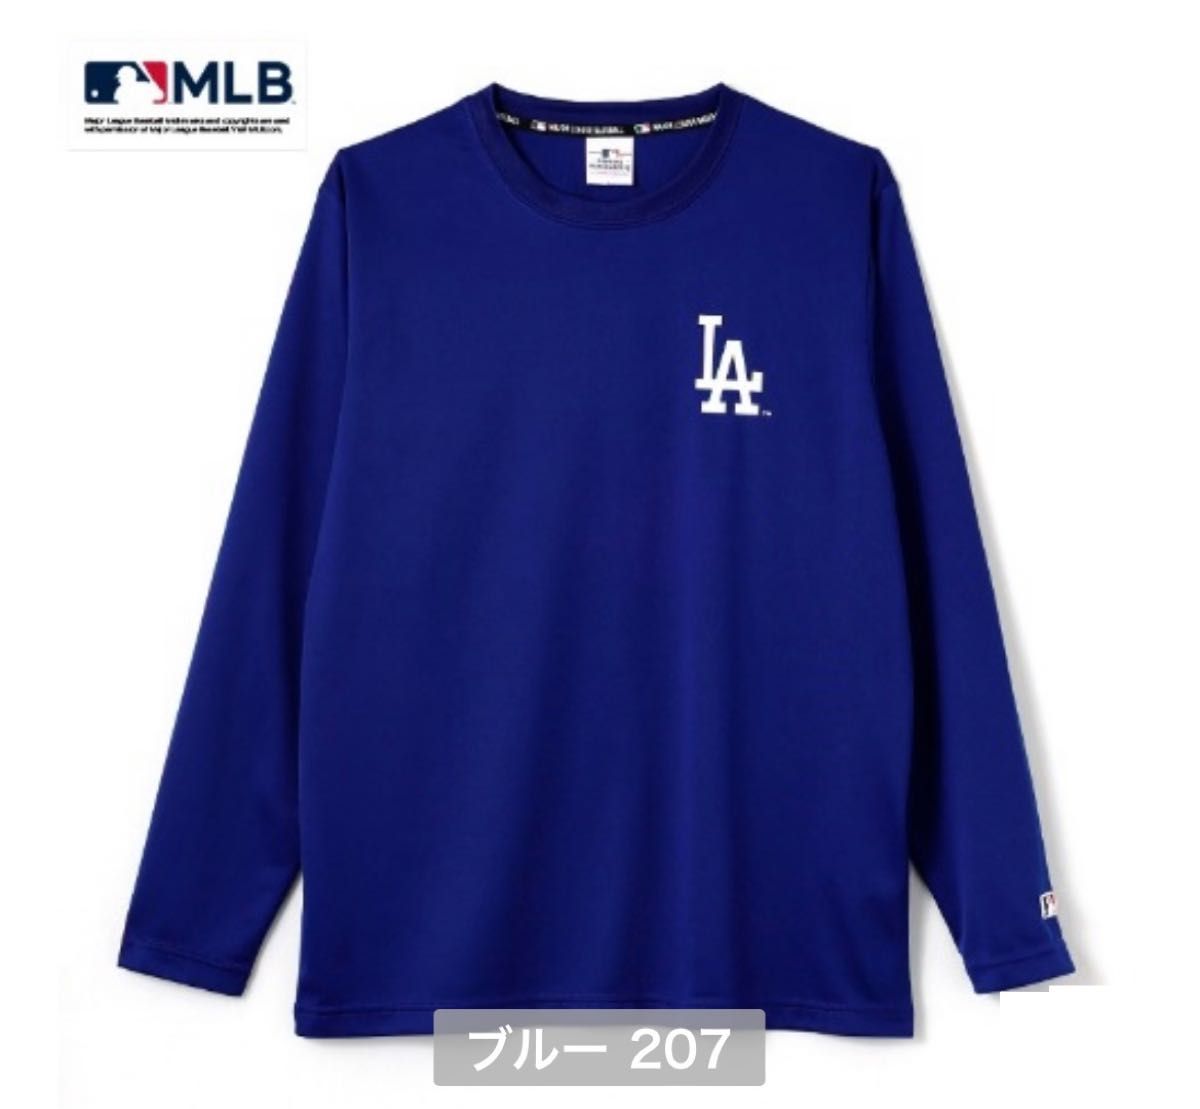 MLB ロサンゼルス・ドジャース 長袖 Tシャツ ロンT メッシュ 速乾 ブルー LLサイズ 大谷翔平 山本由伸